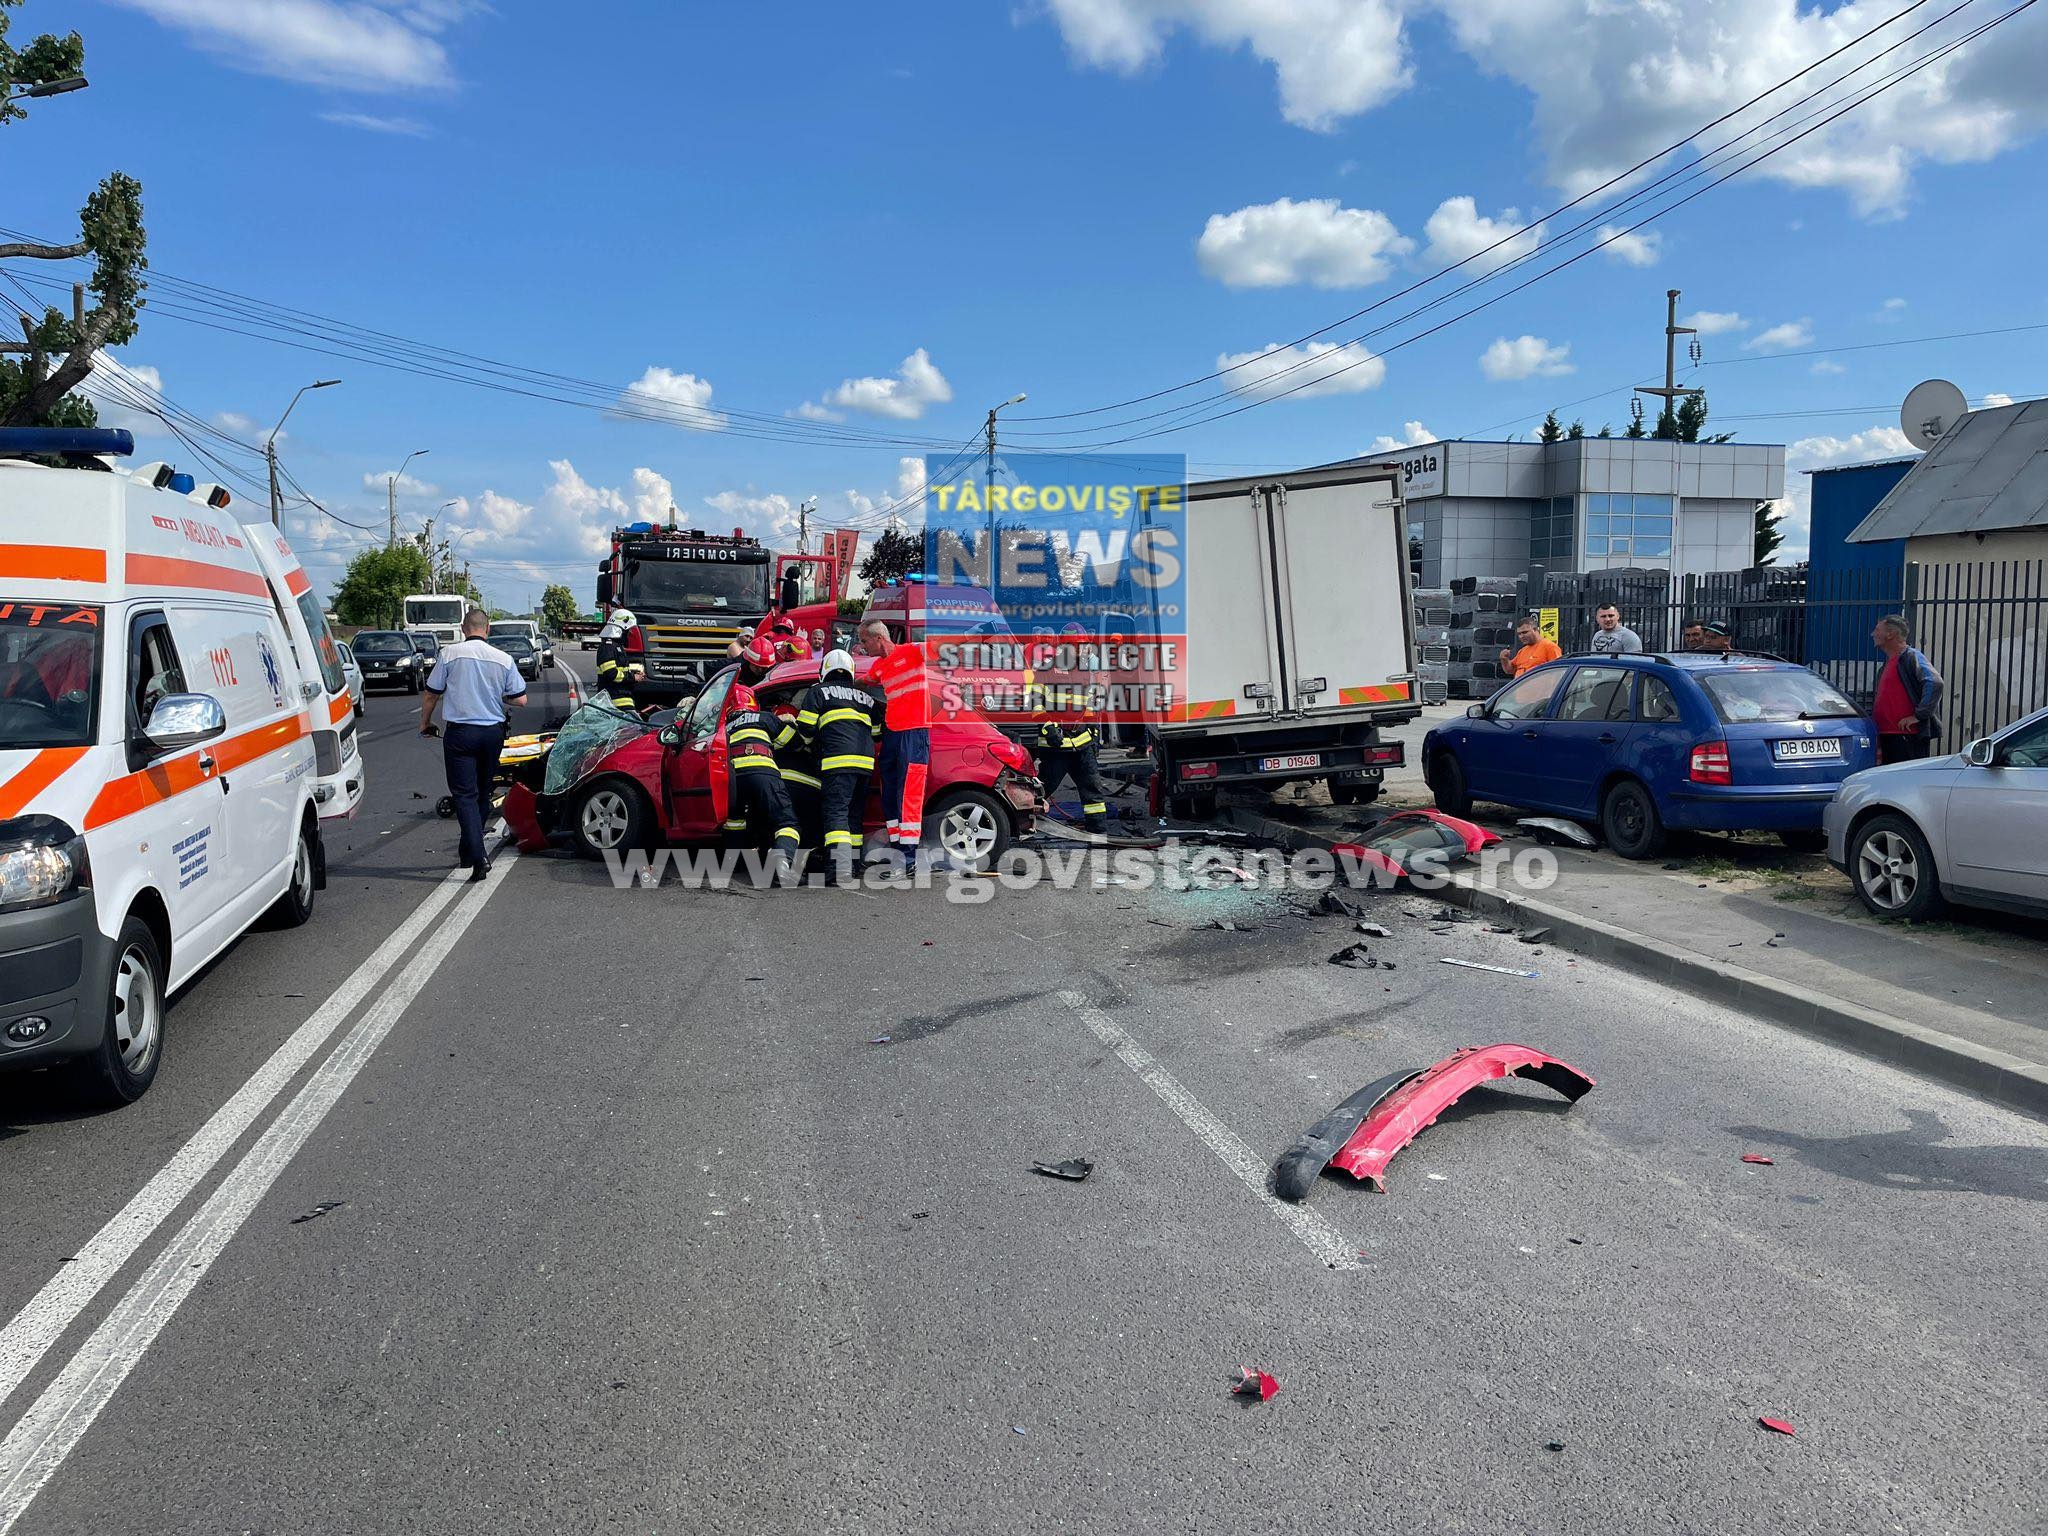 VIDEO – Accident cu încarcerare pe centura oraşului Târgovişte! Un BMW scăpat de sub control, condus de un şofer beat şi fără permis, a făcut prăpăd!